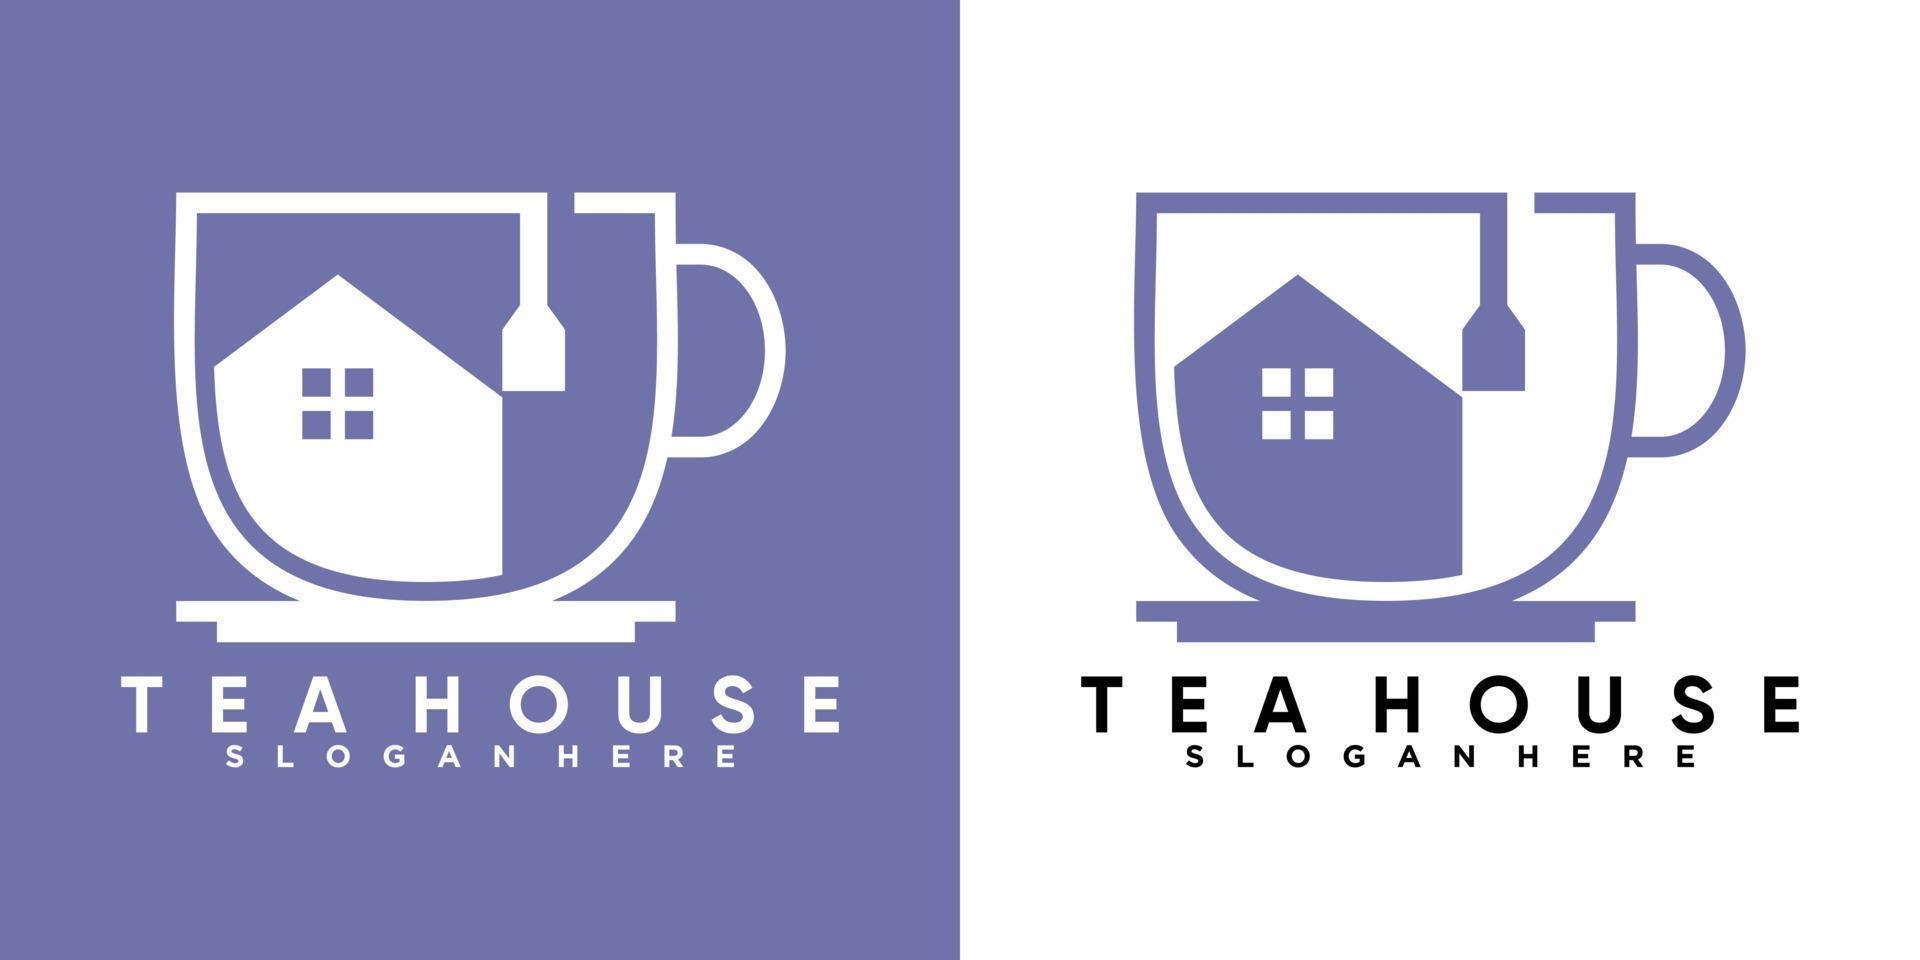 design de logotipo de xícara de chá com estilo e conceito criativo vetor